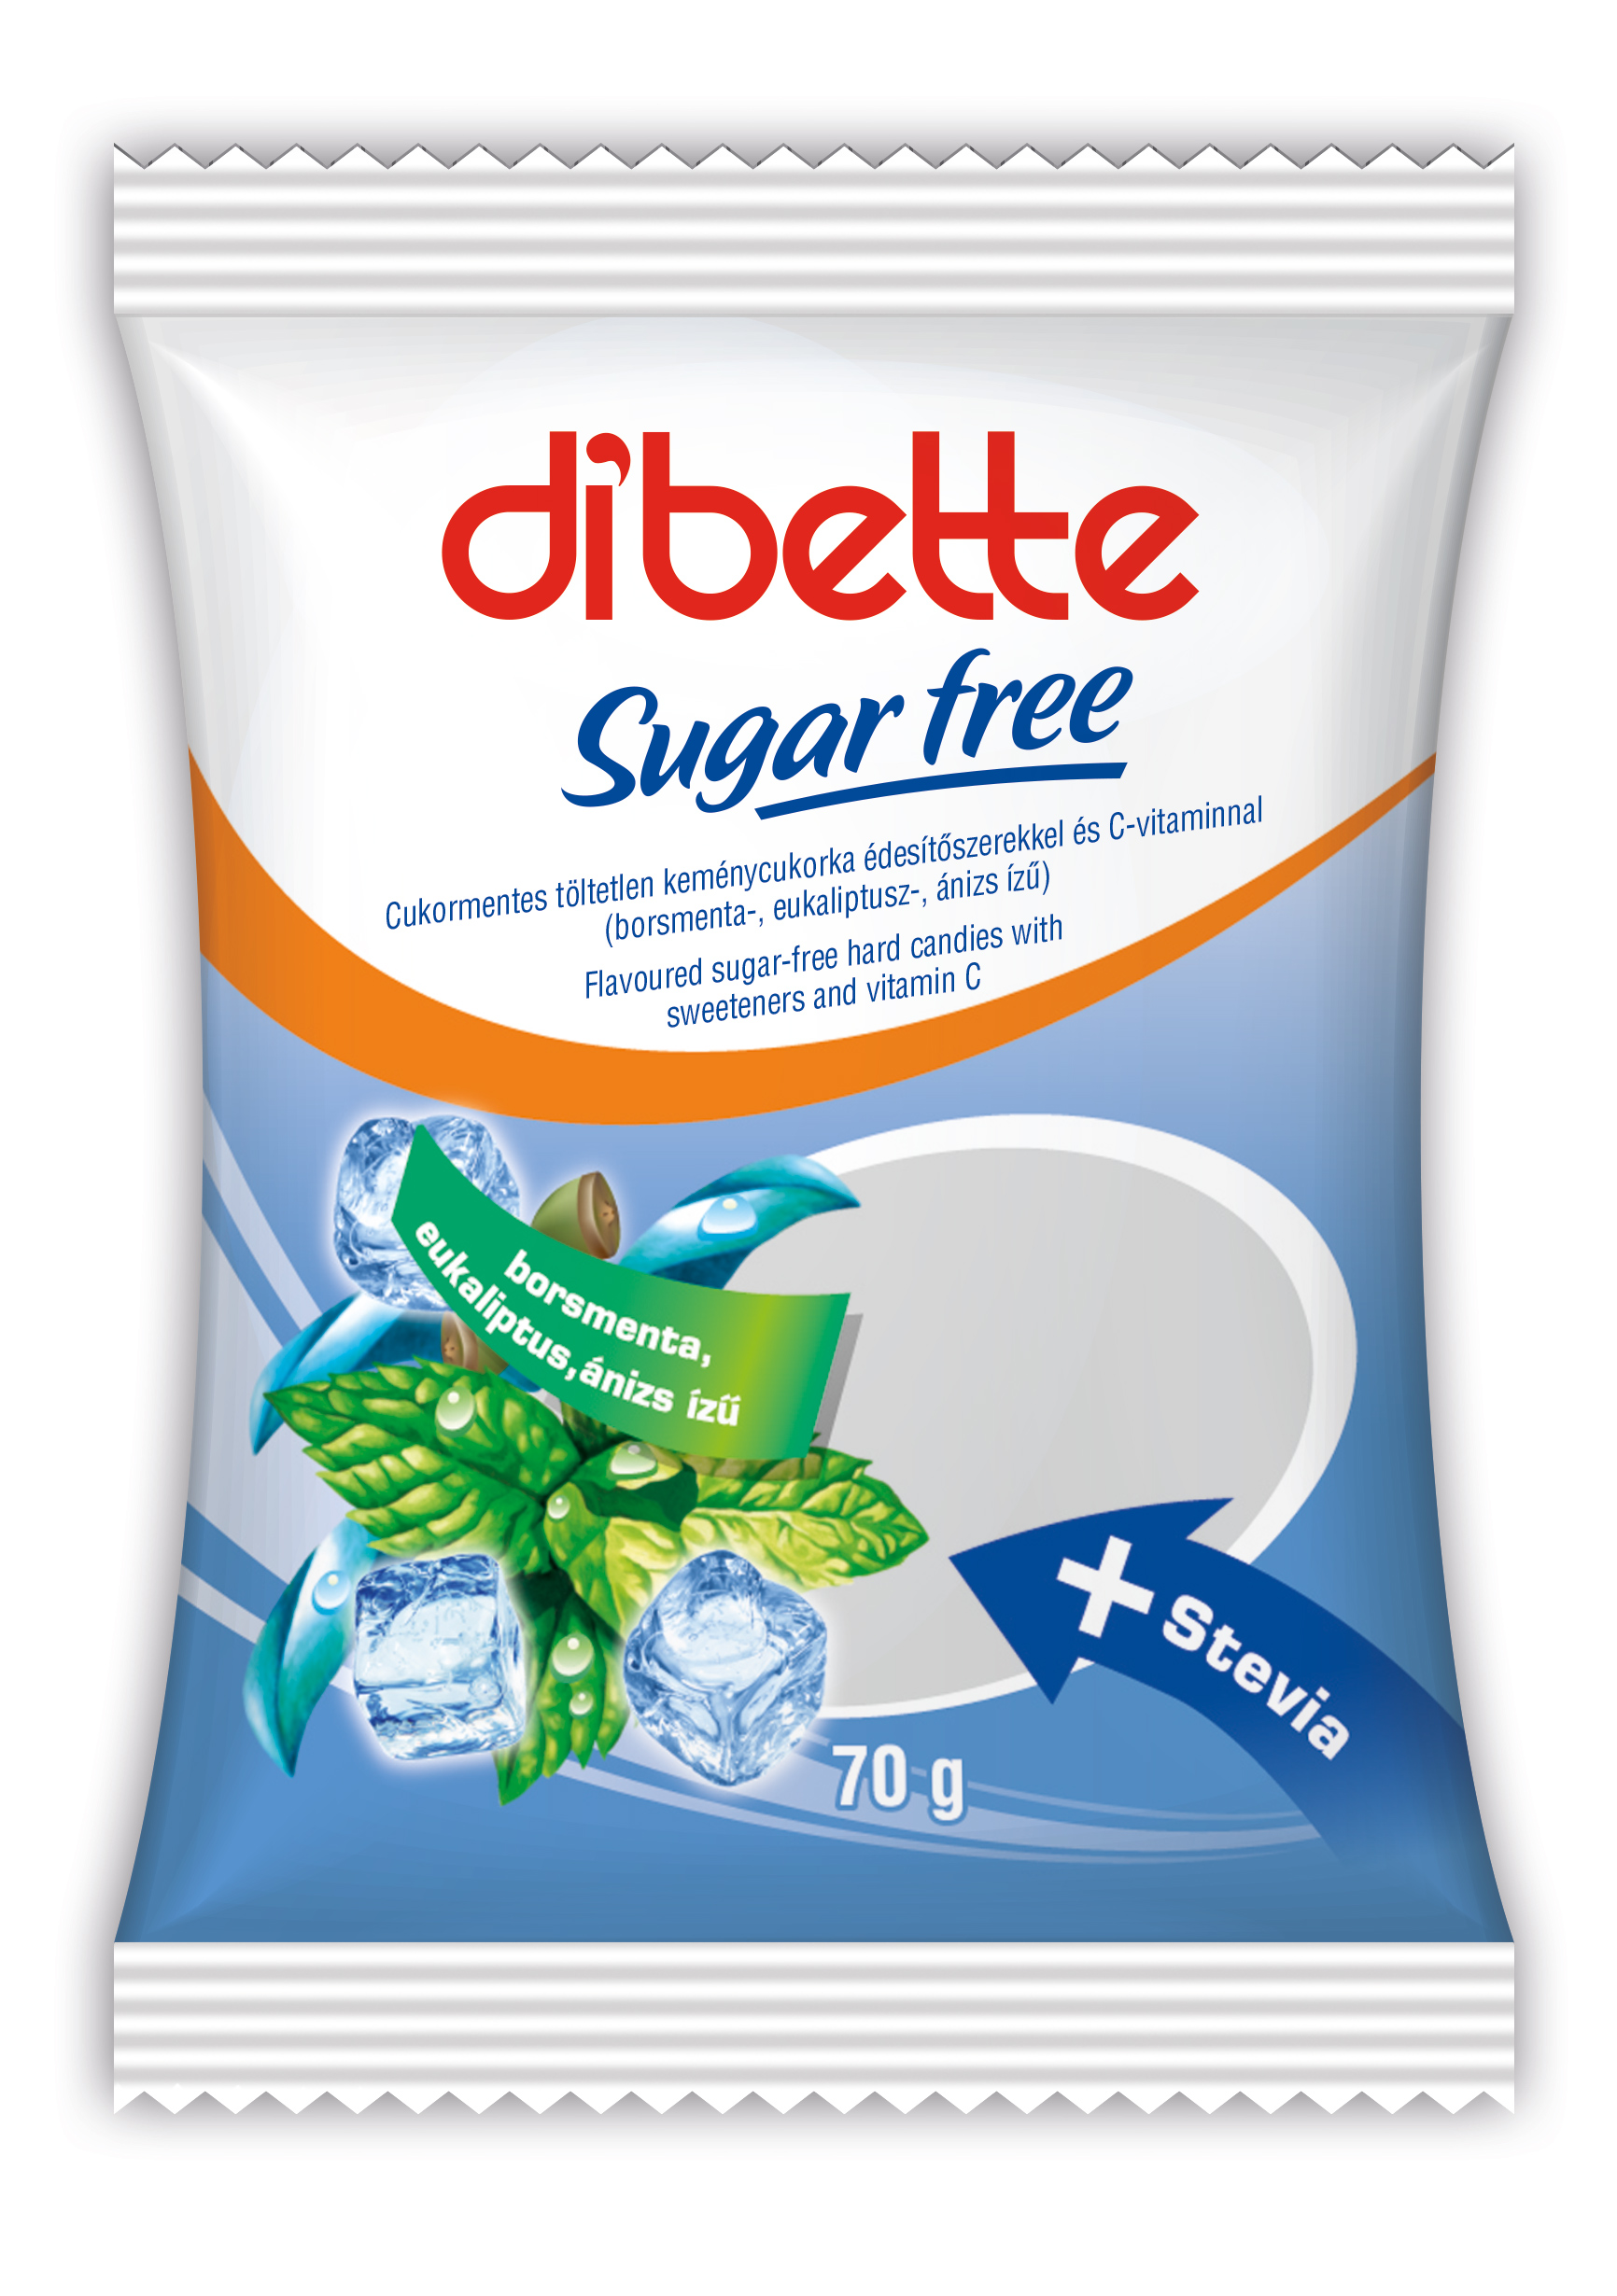 Dibette cukormentes vegyes mentol ízű cukorka édesítőszerekkel 70 g